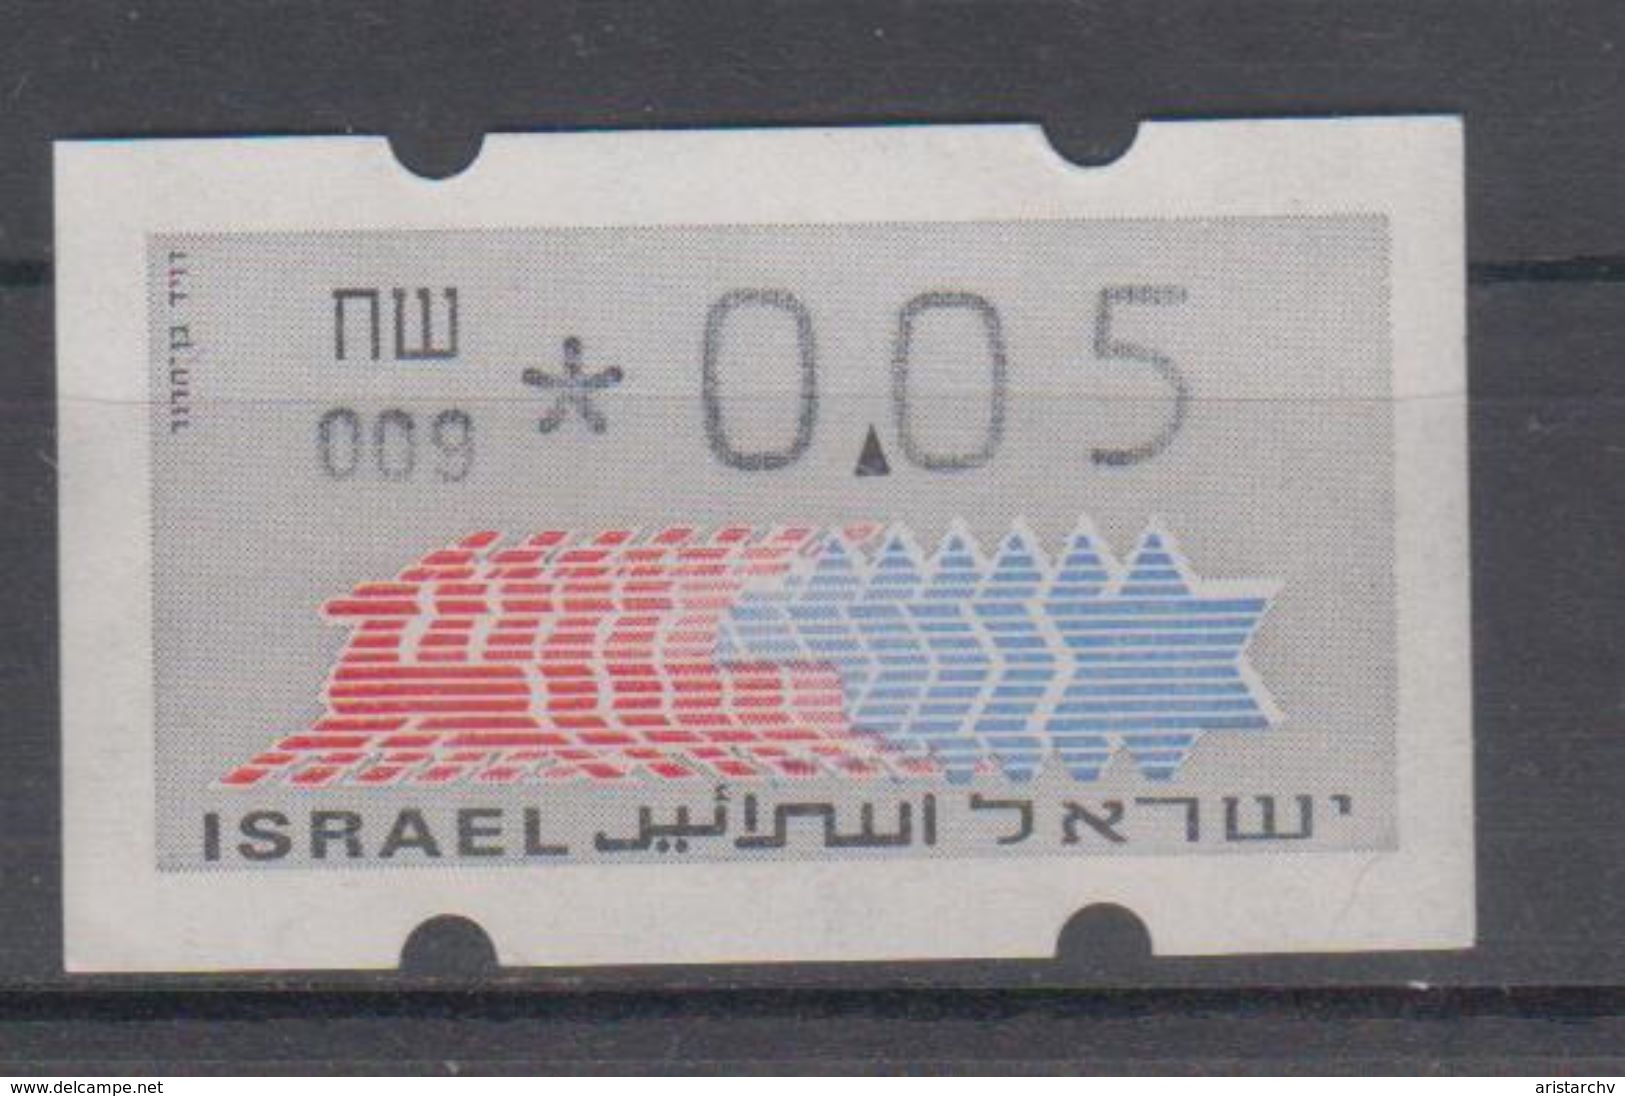 ISRAEL 1988 KLUSSENDORF ATM 0.05 SHEKELS NUMBER 009 WITH BACK NUMBER - Vignettes D'affranchissement (Frama)